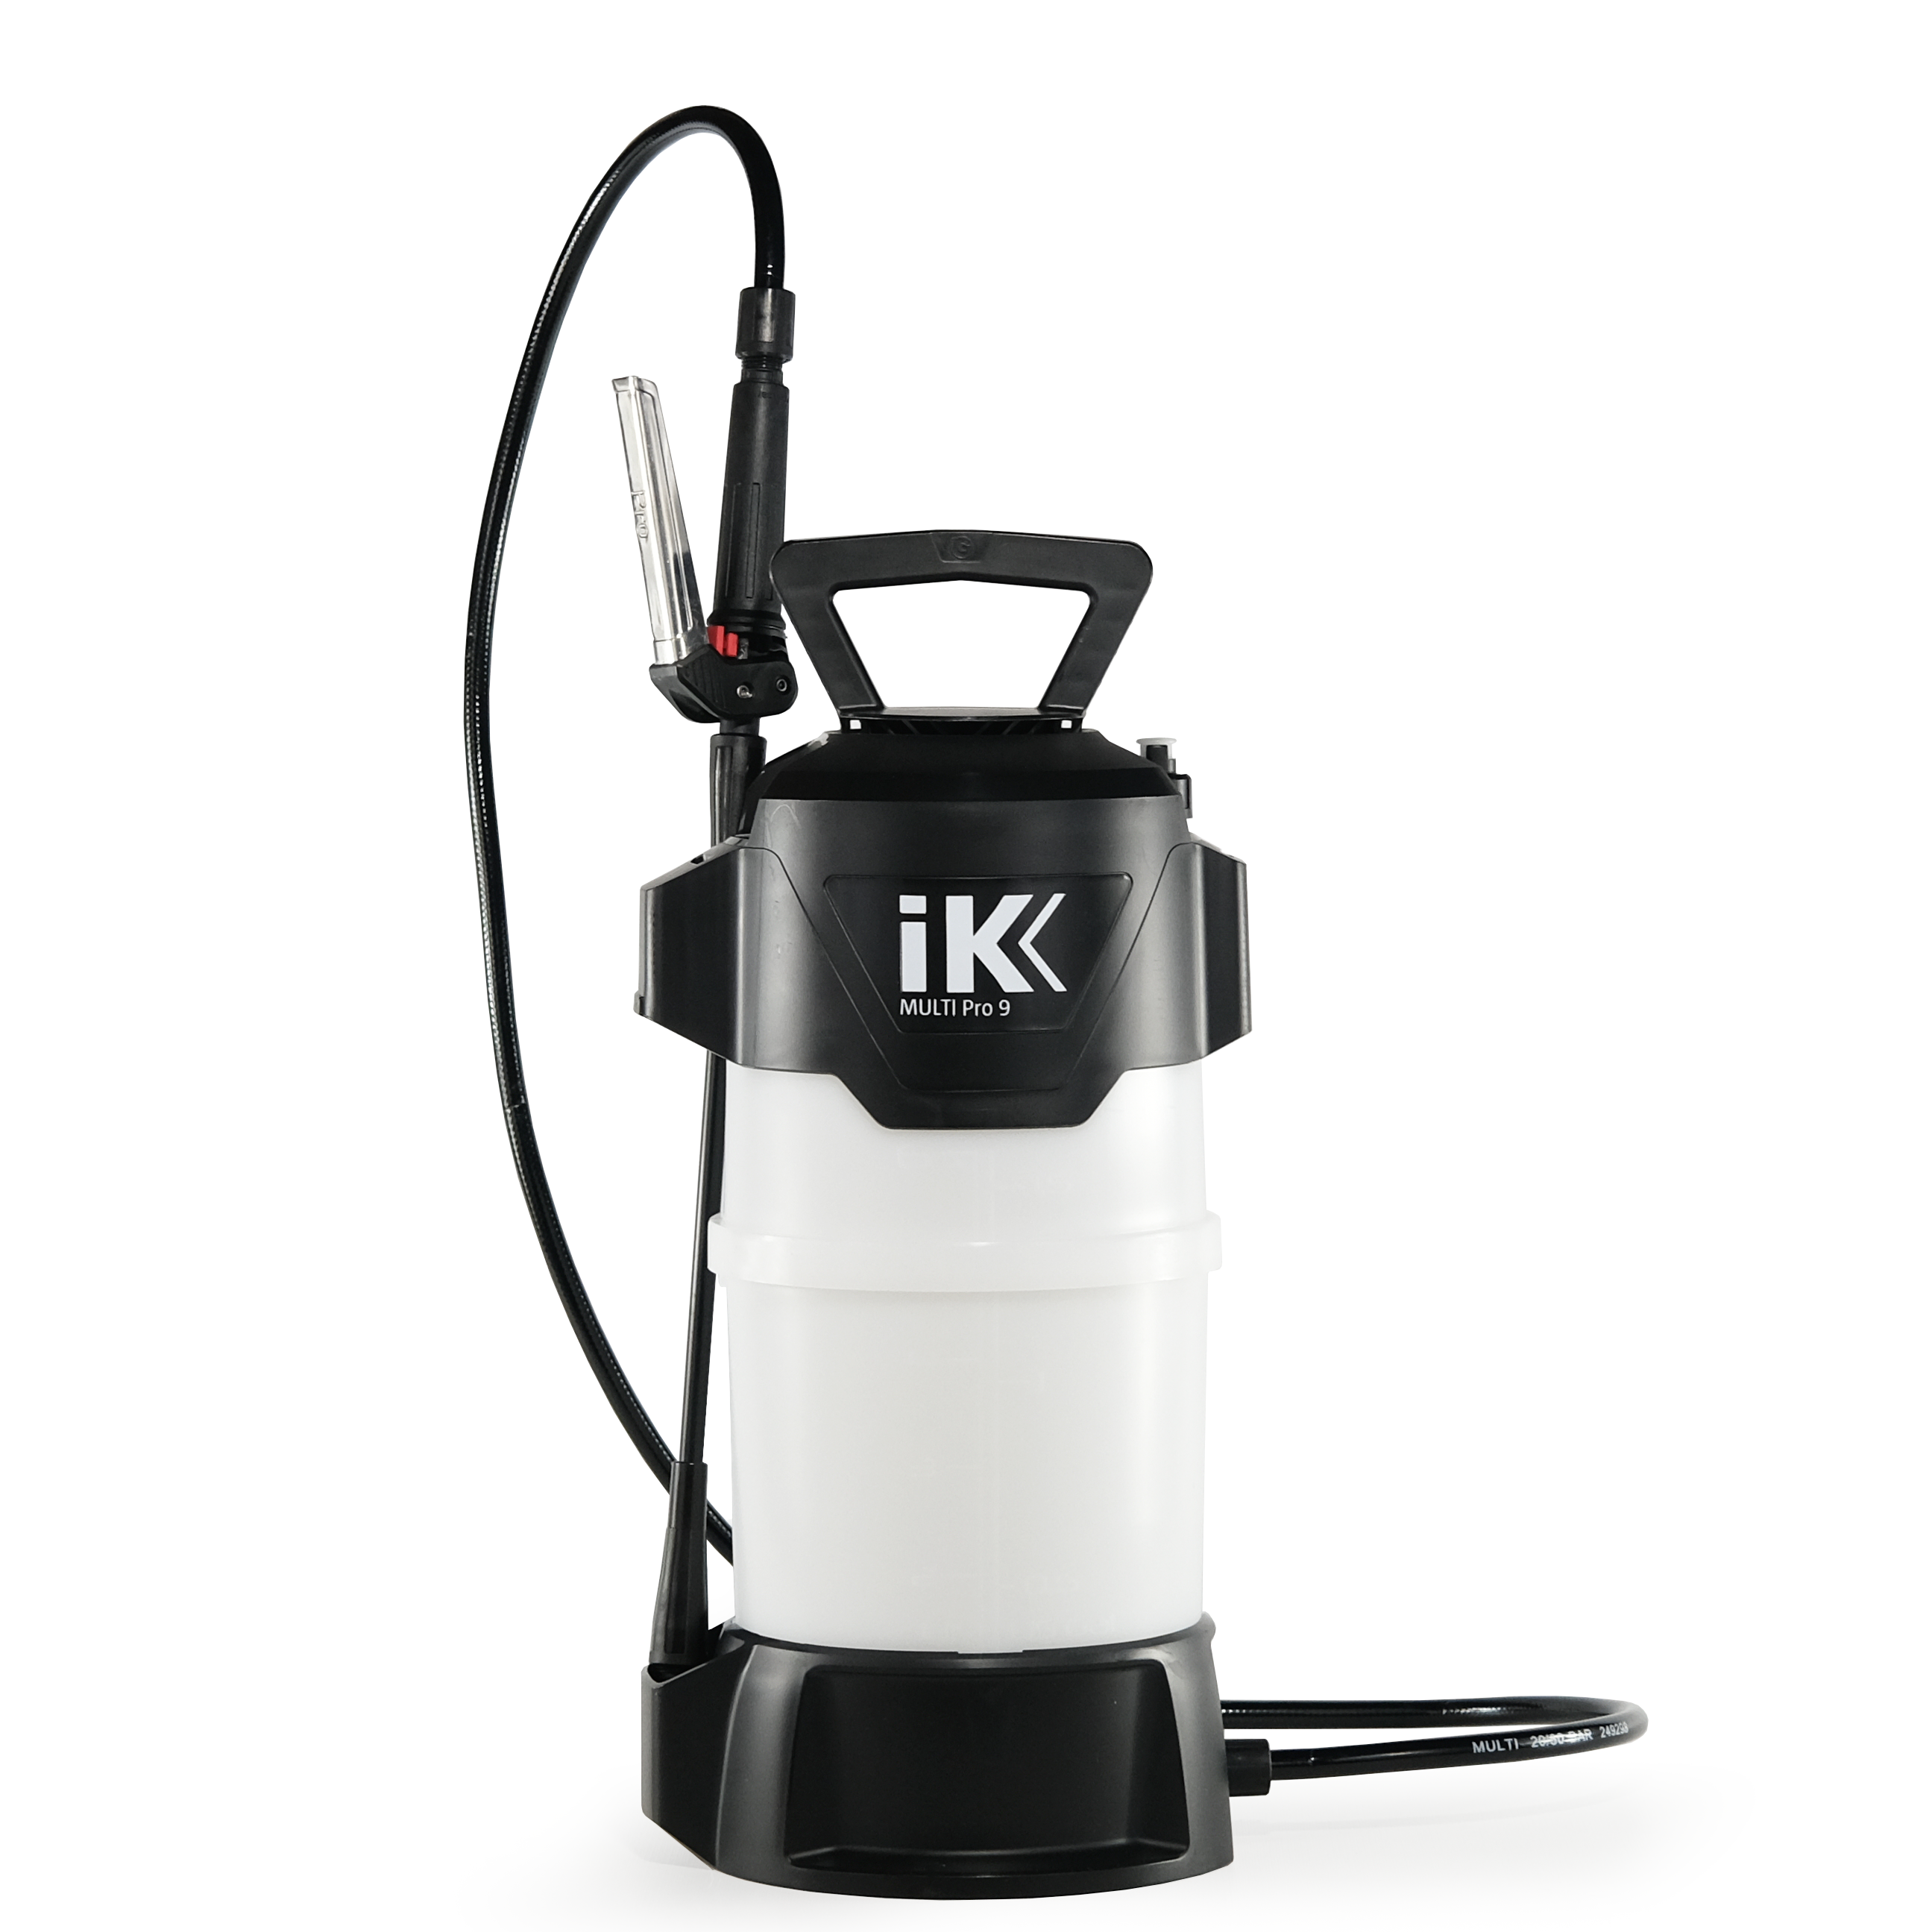 iK Foam Pro 12 Sprayer